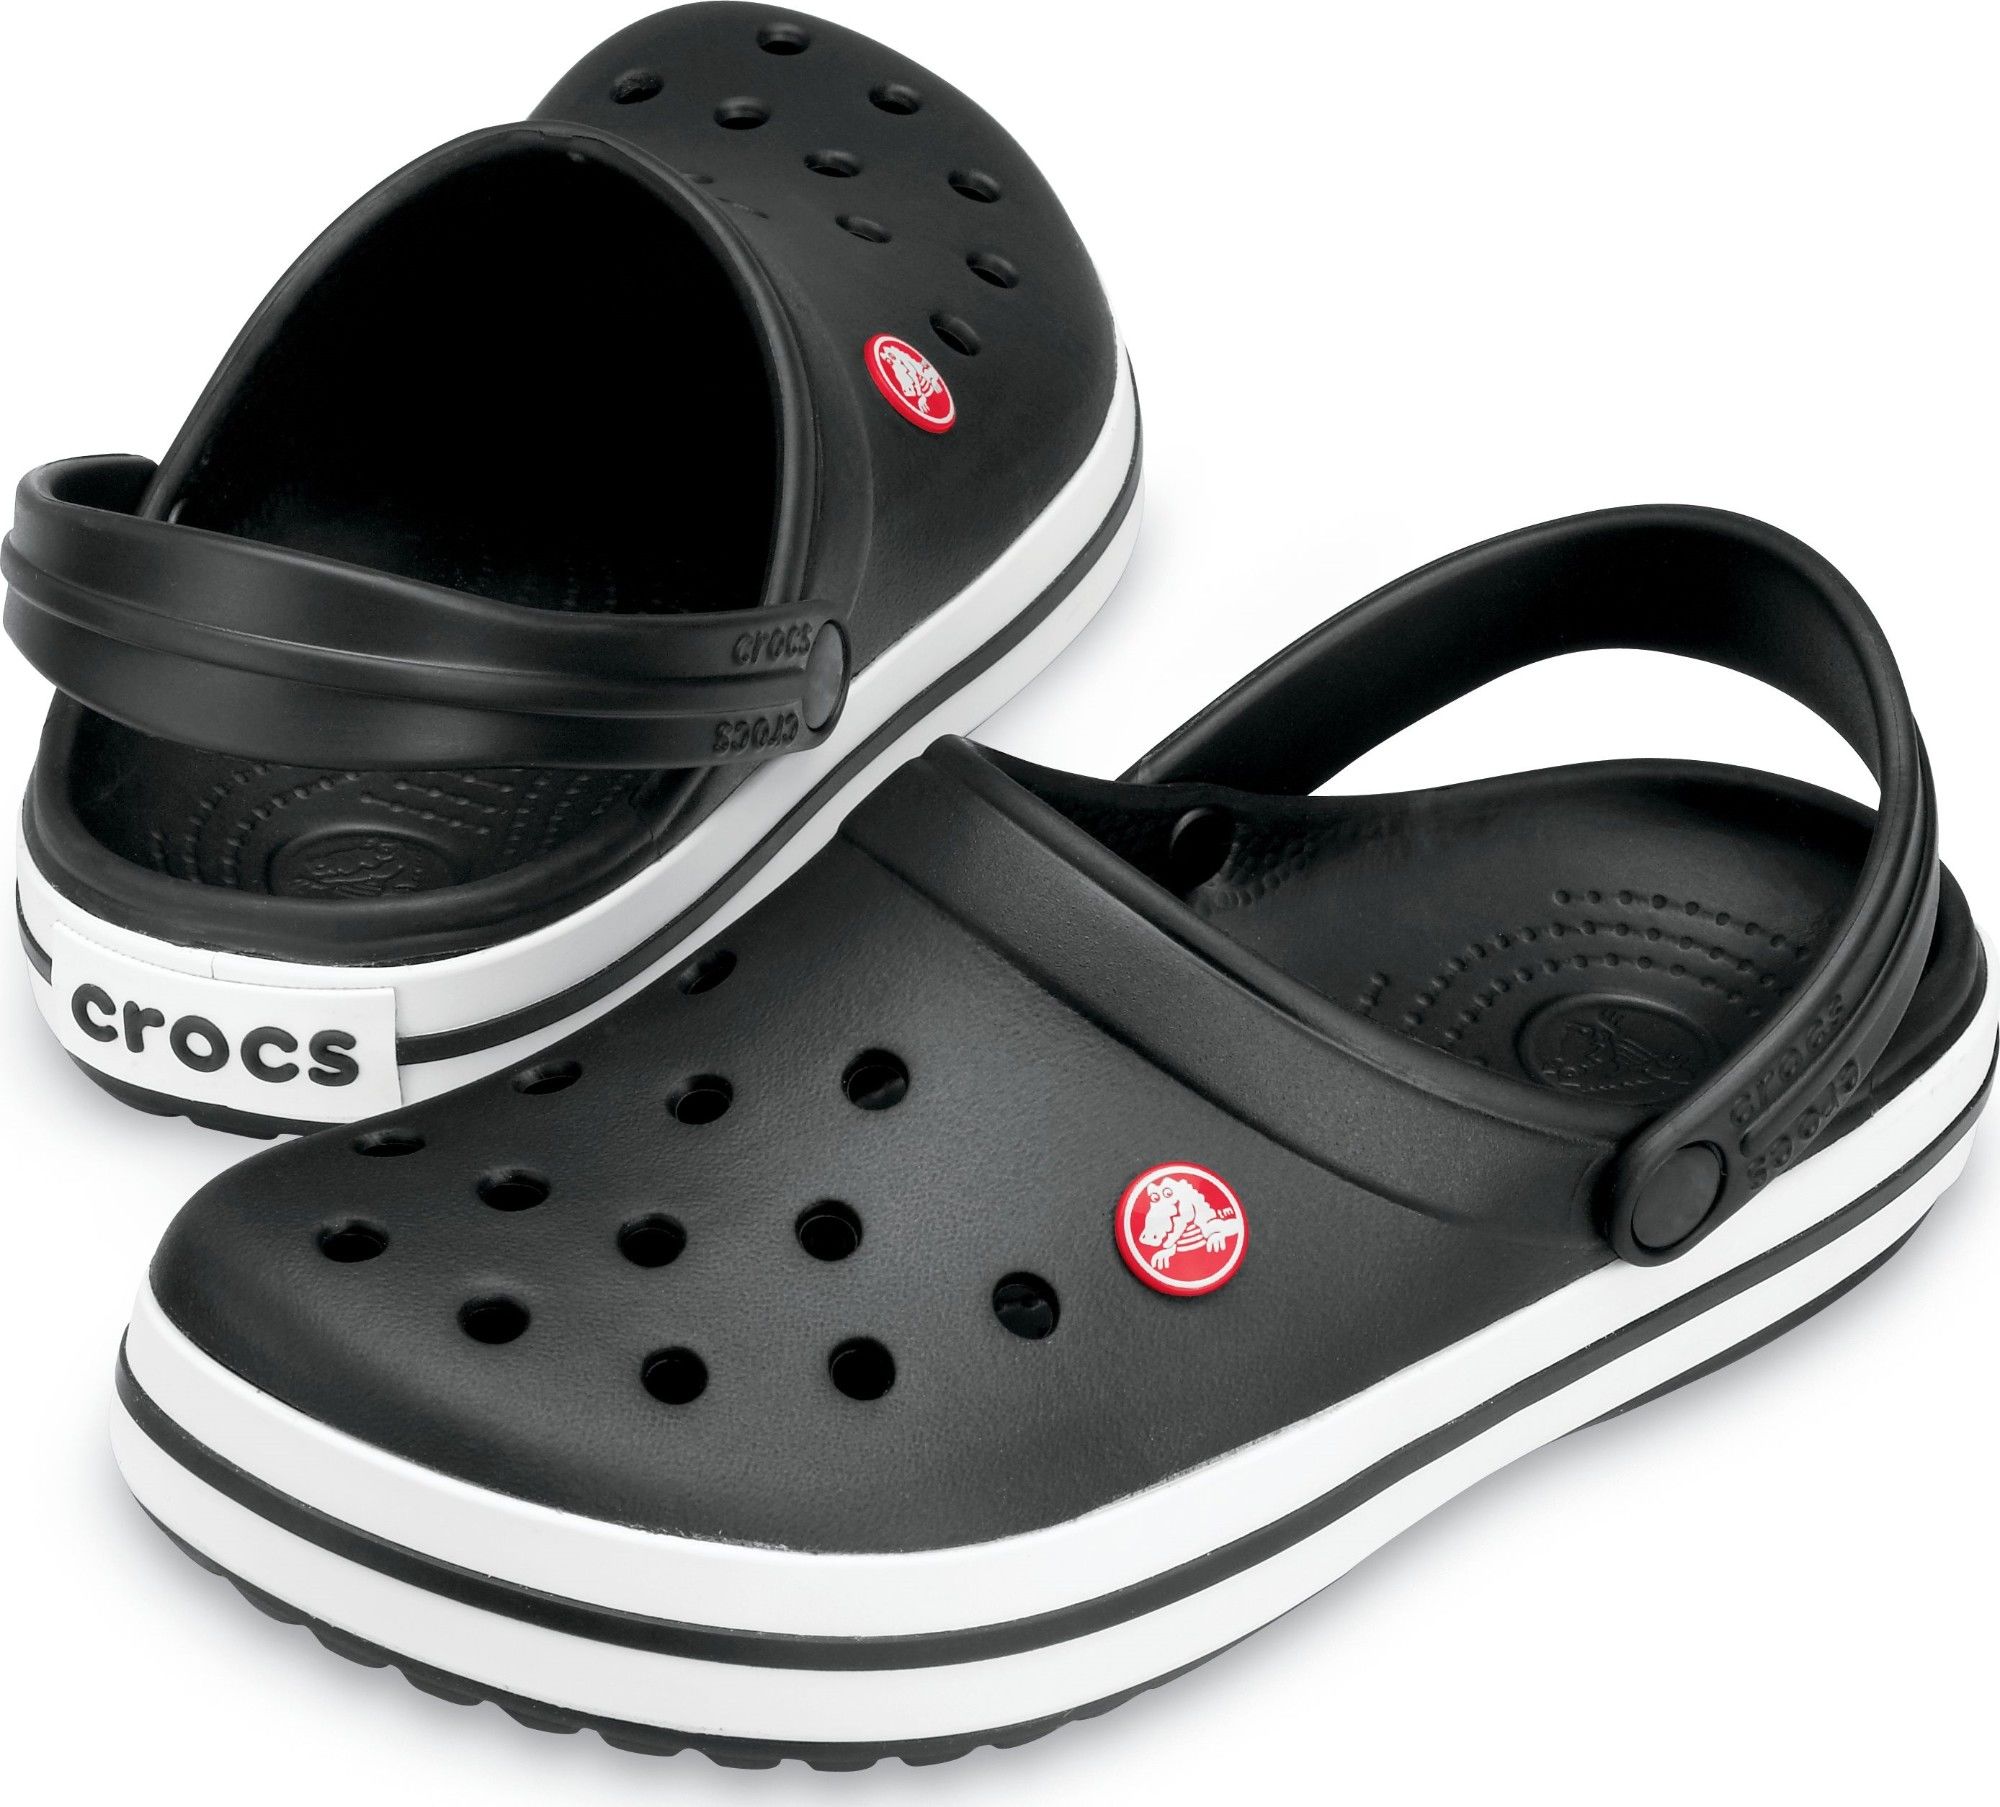 Мужская медицинская обувь. Crocs 11016 Crocband. Crocs Crocband Clog. Crocs Crocband Black. Crocs Crocband 11016-01u.